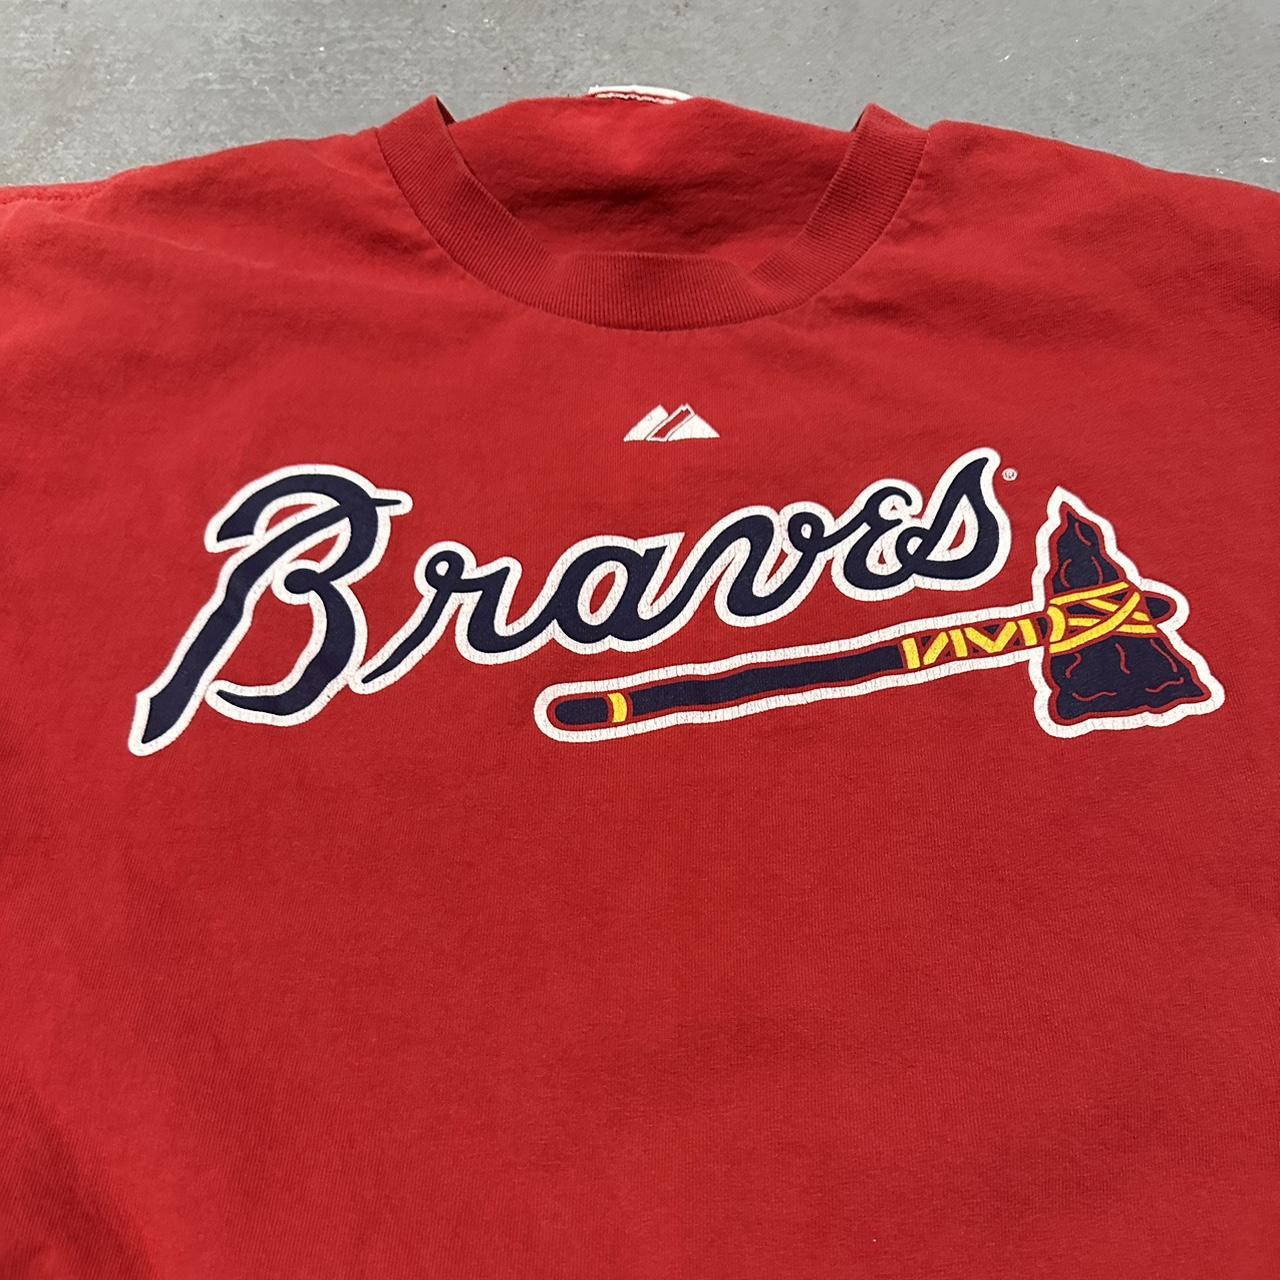 Atlanta Braves Jason Heyward T-Shirt #Atlanta - Depop